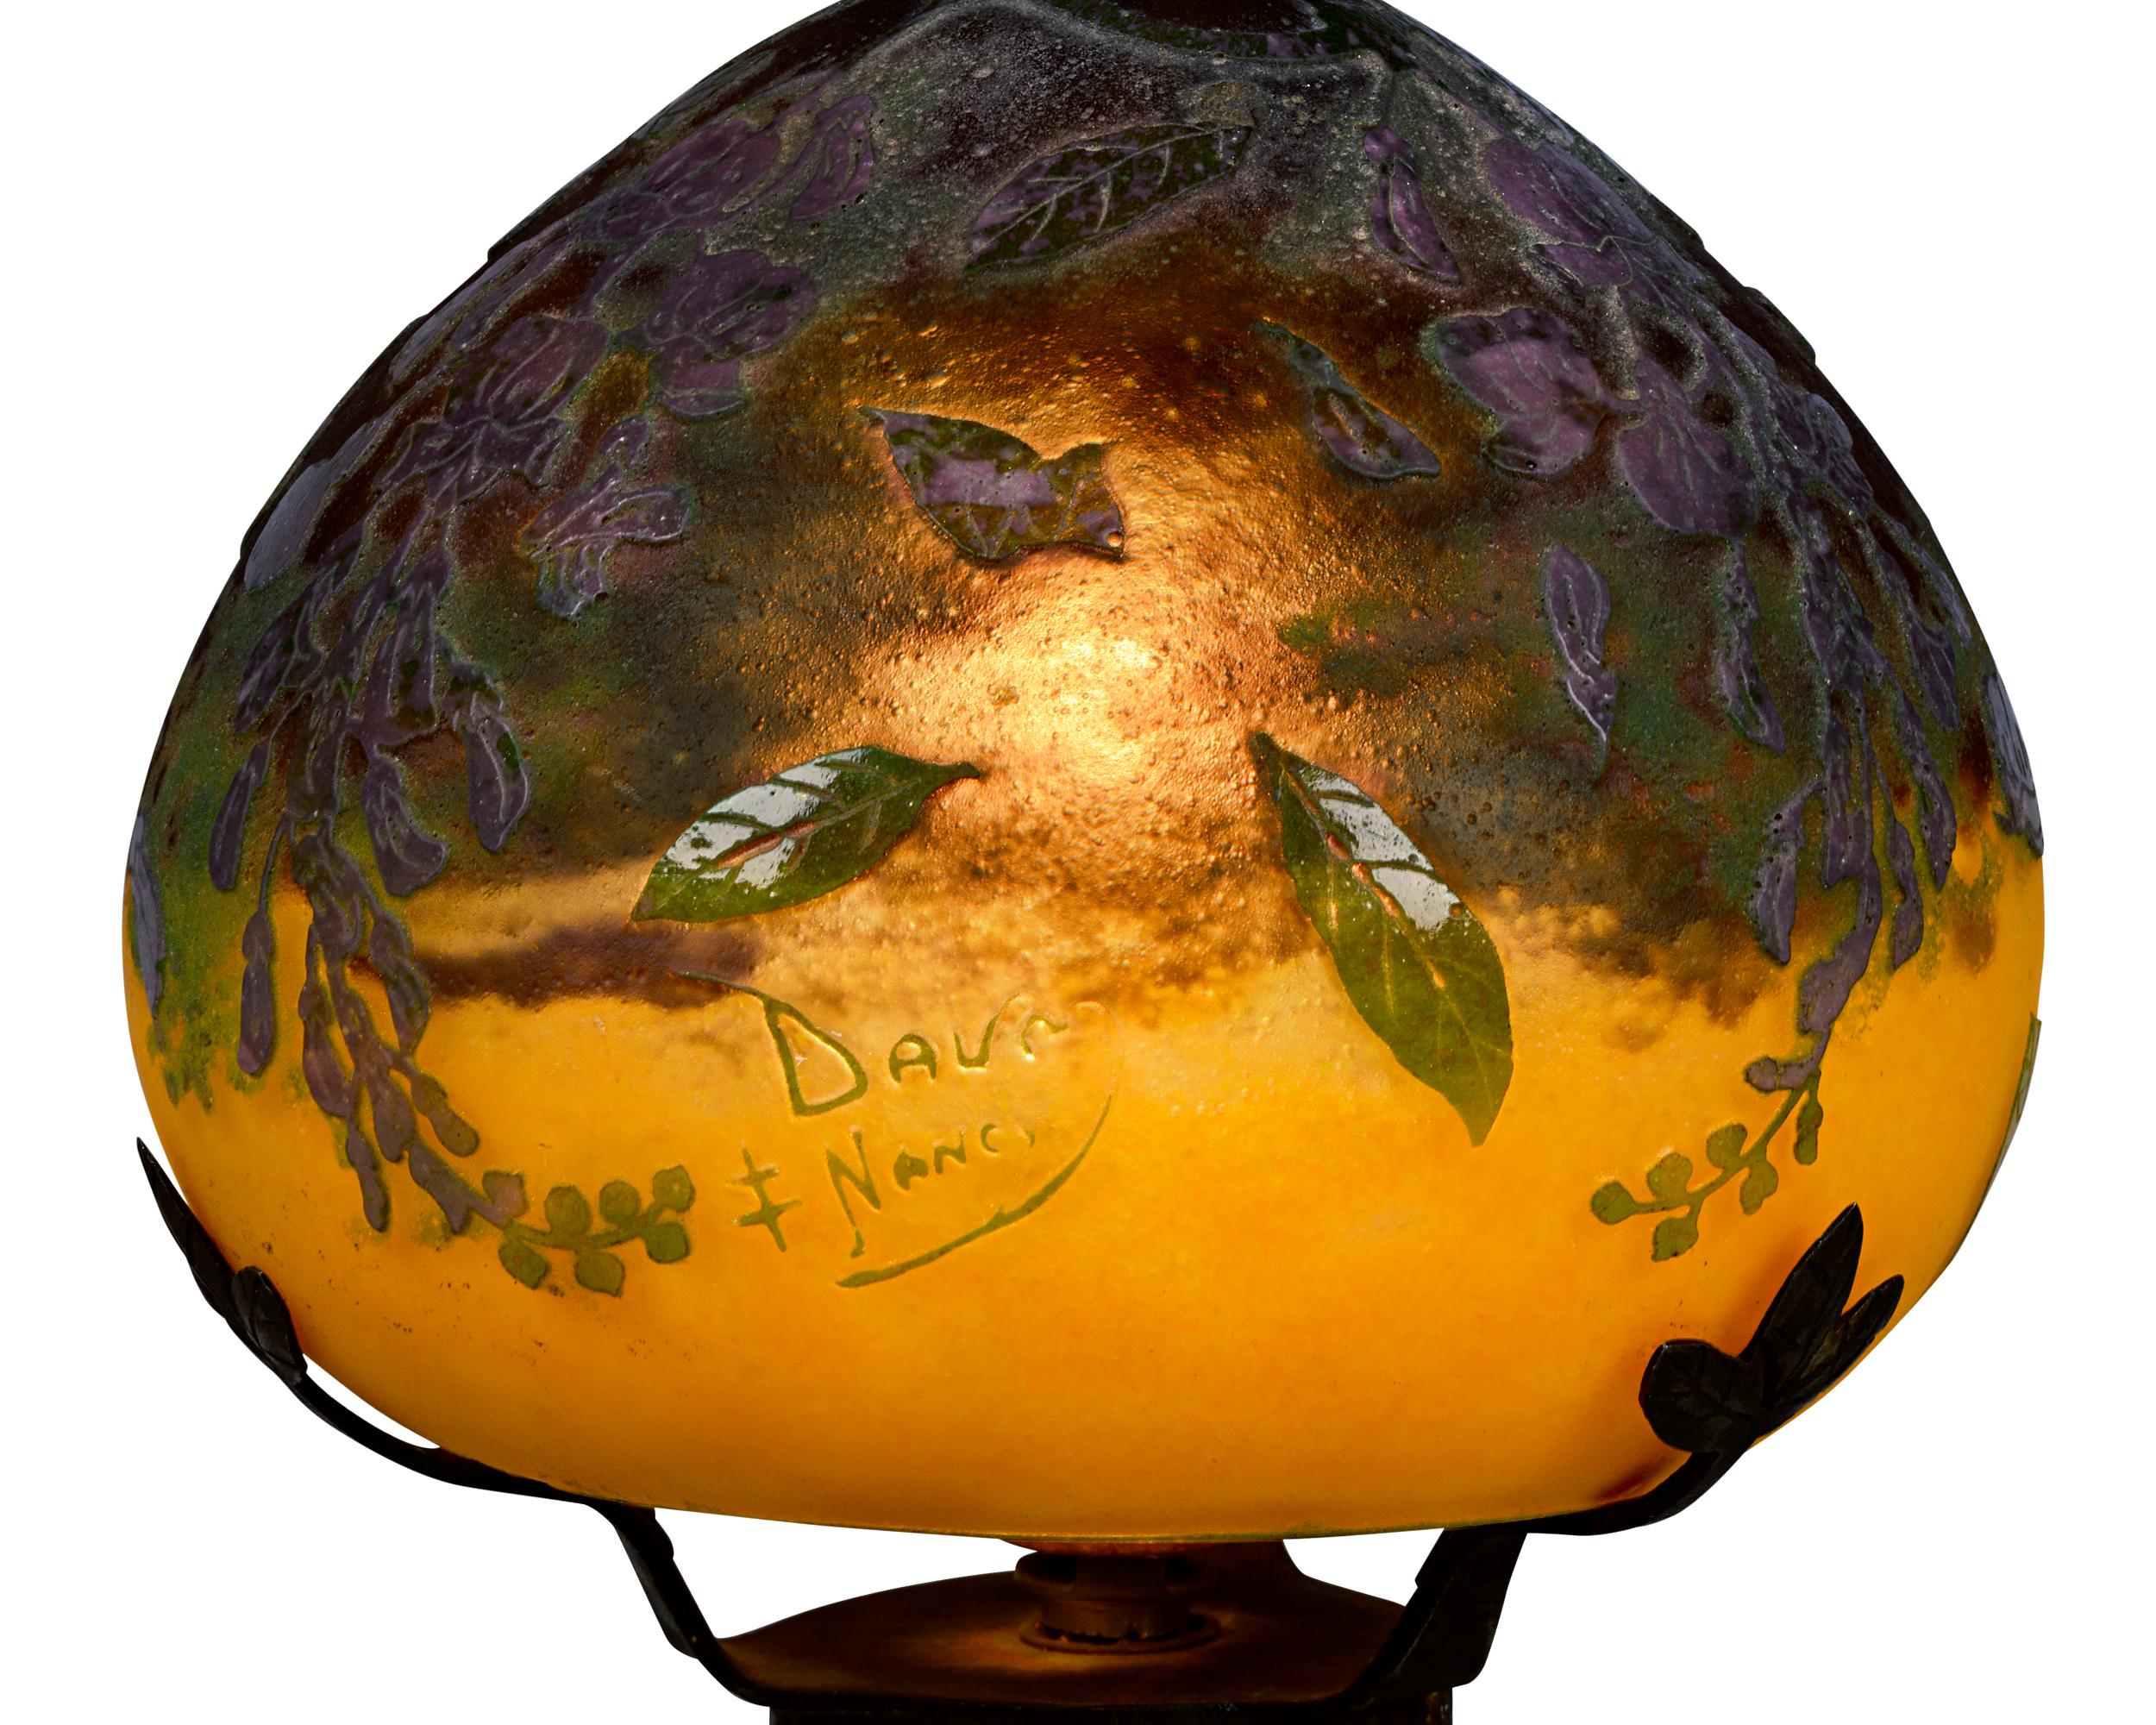 Art Nouveau Cameo Glass Lamp by Daum Nancy